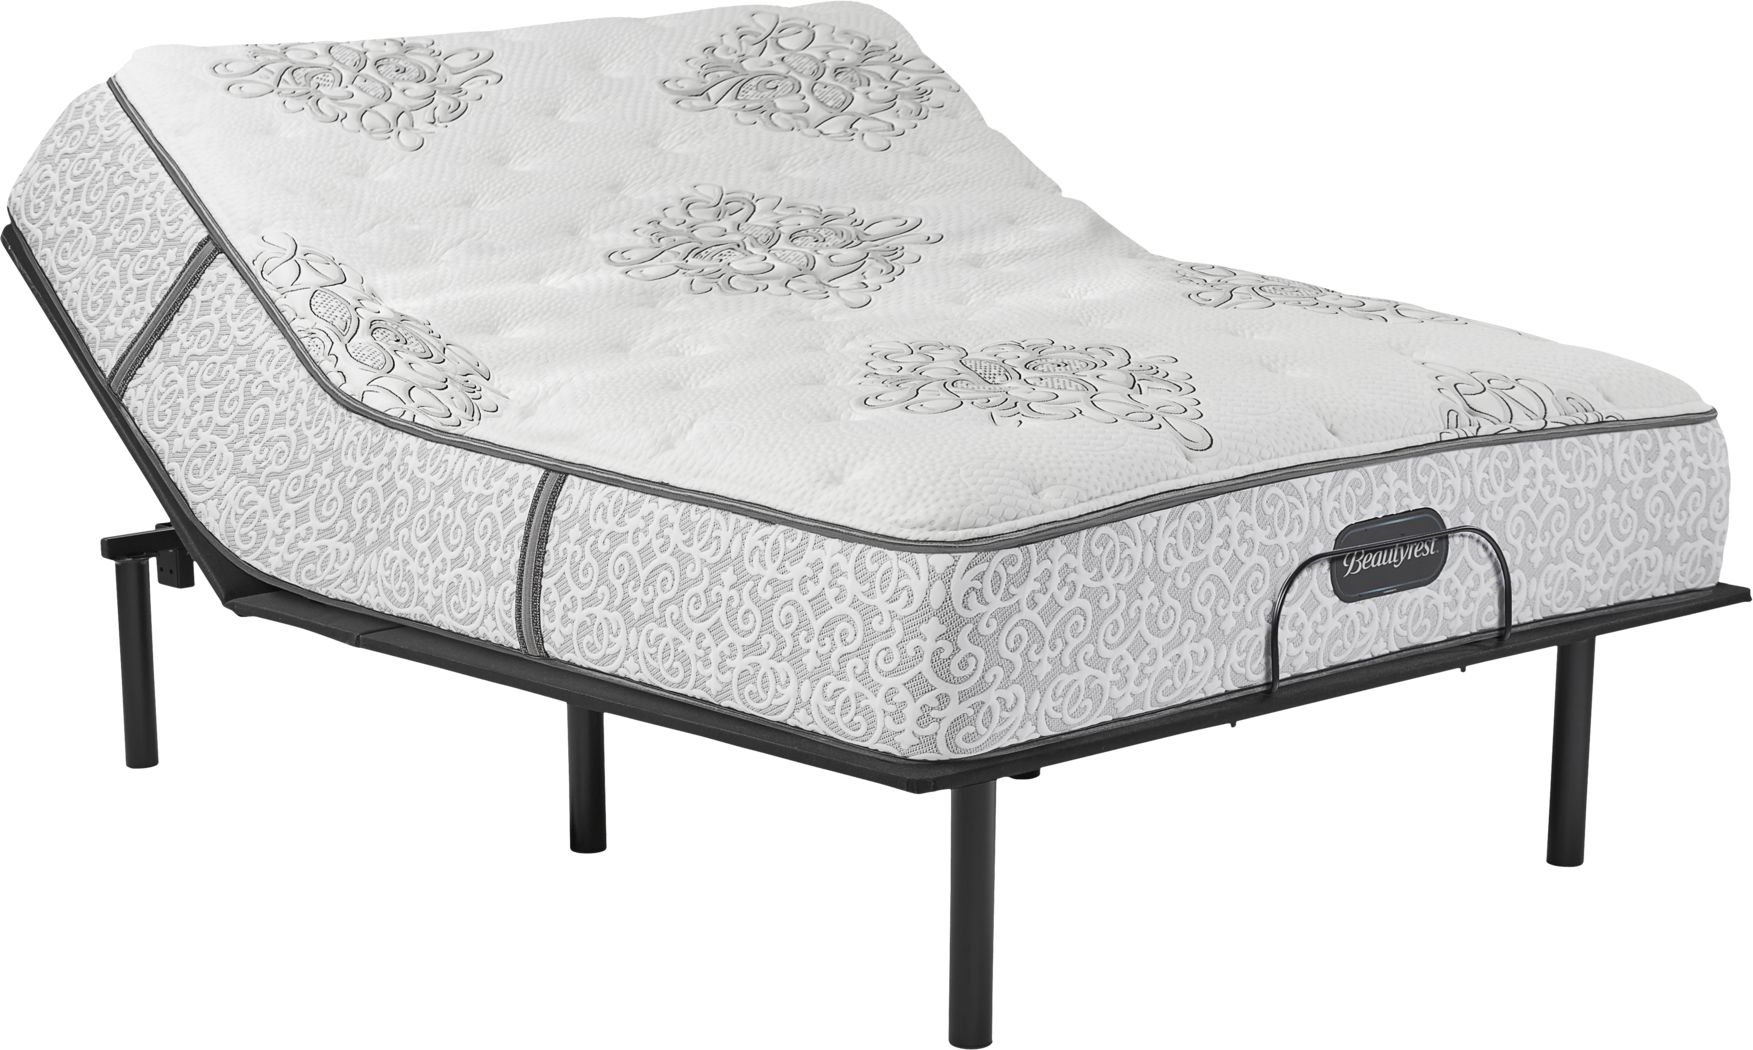 beautyrest legend plush mattress reviews